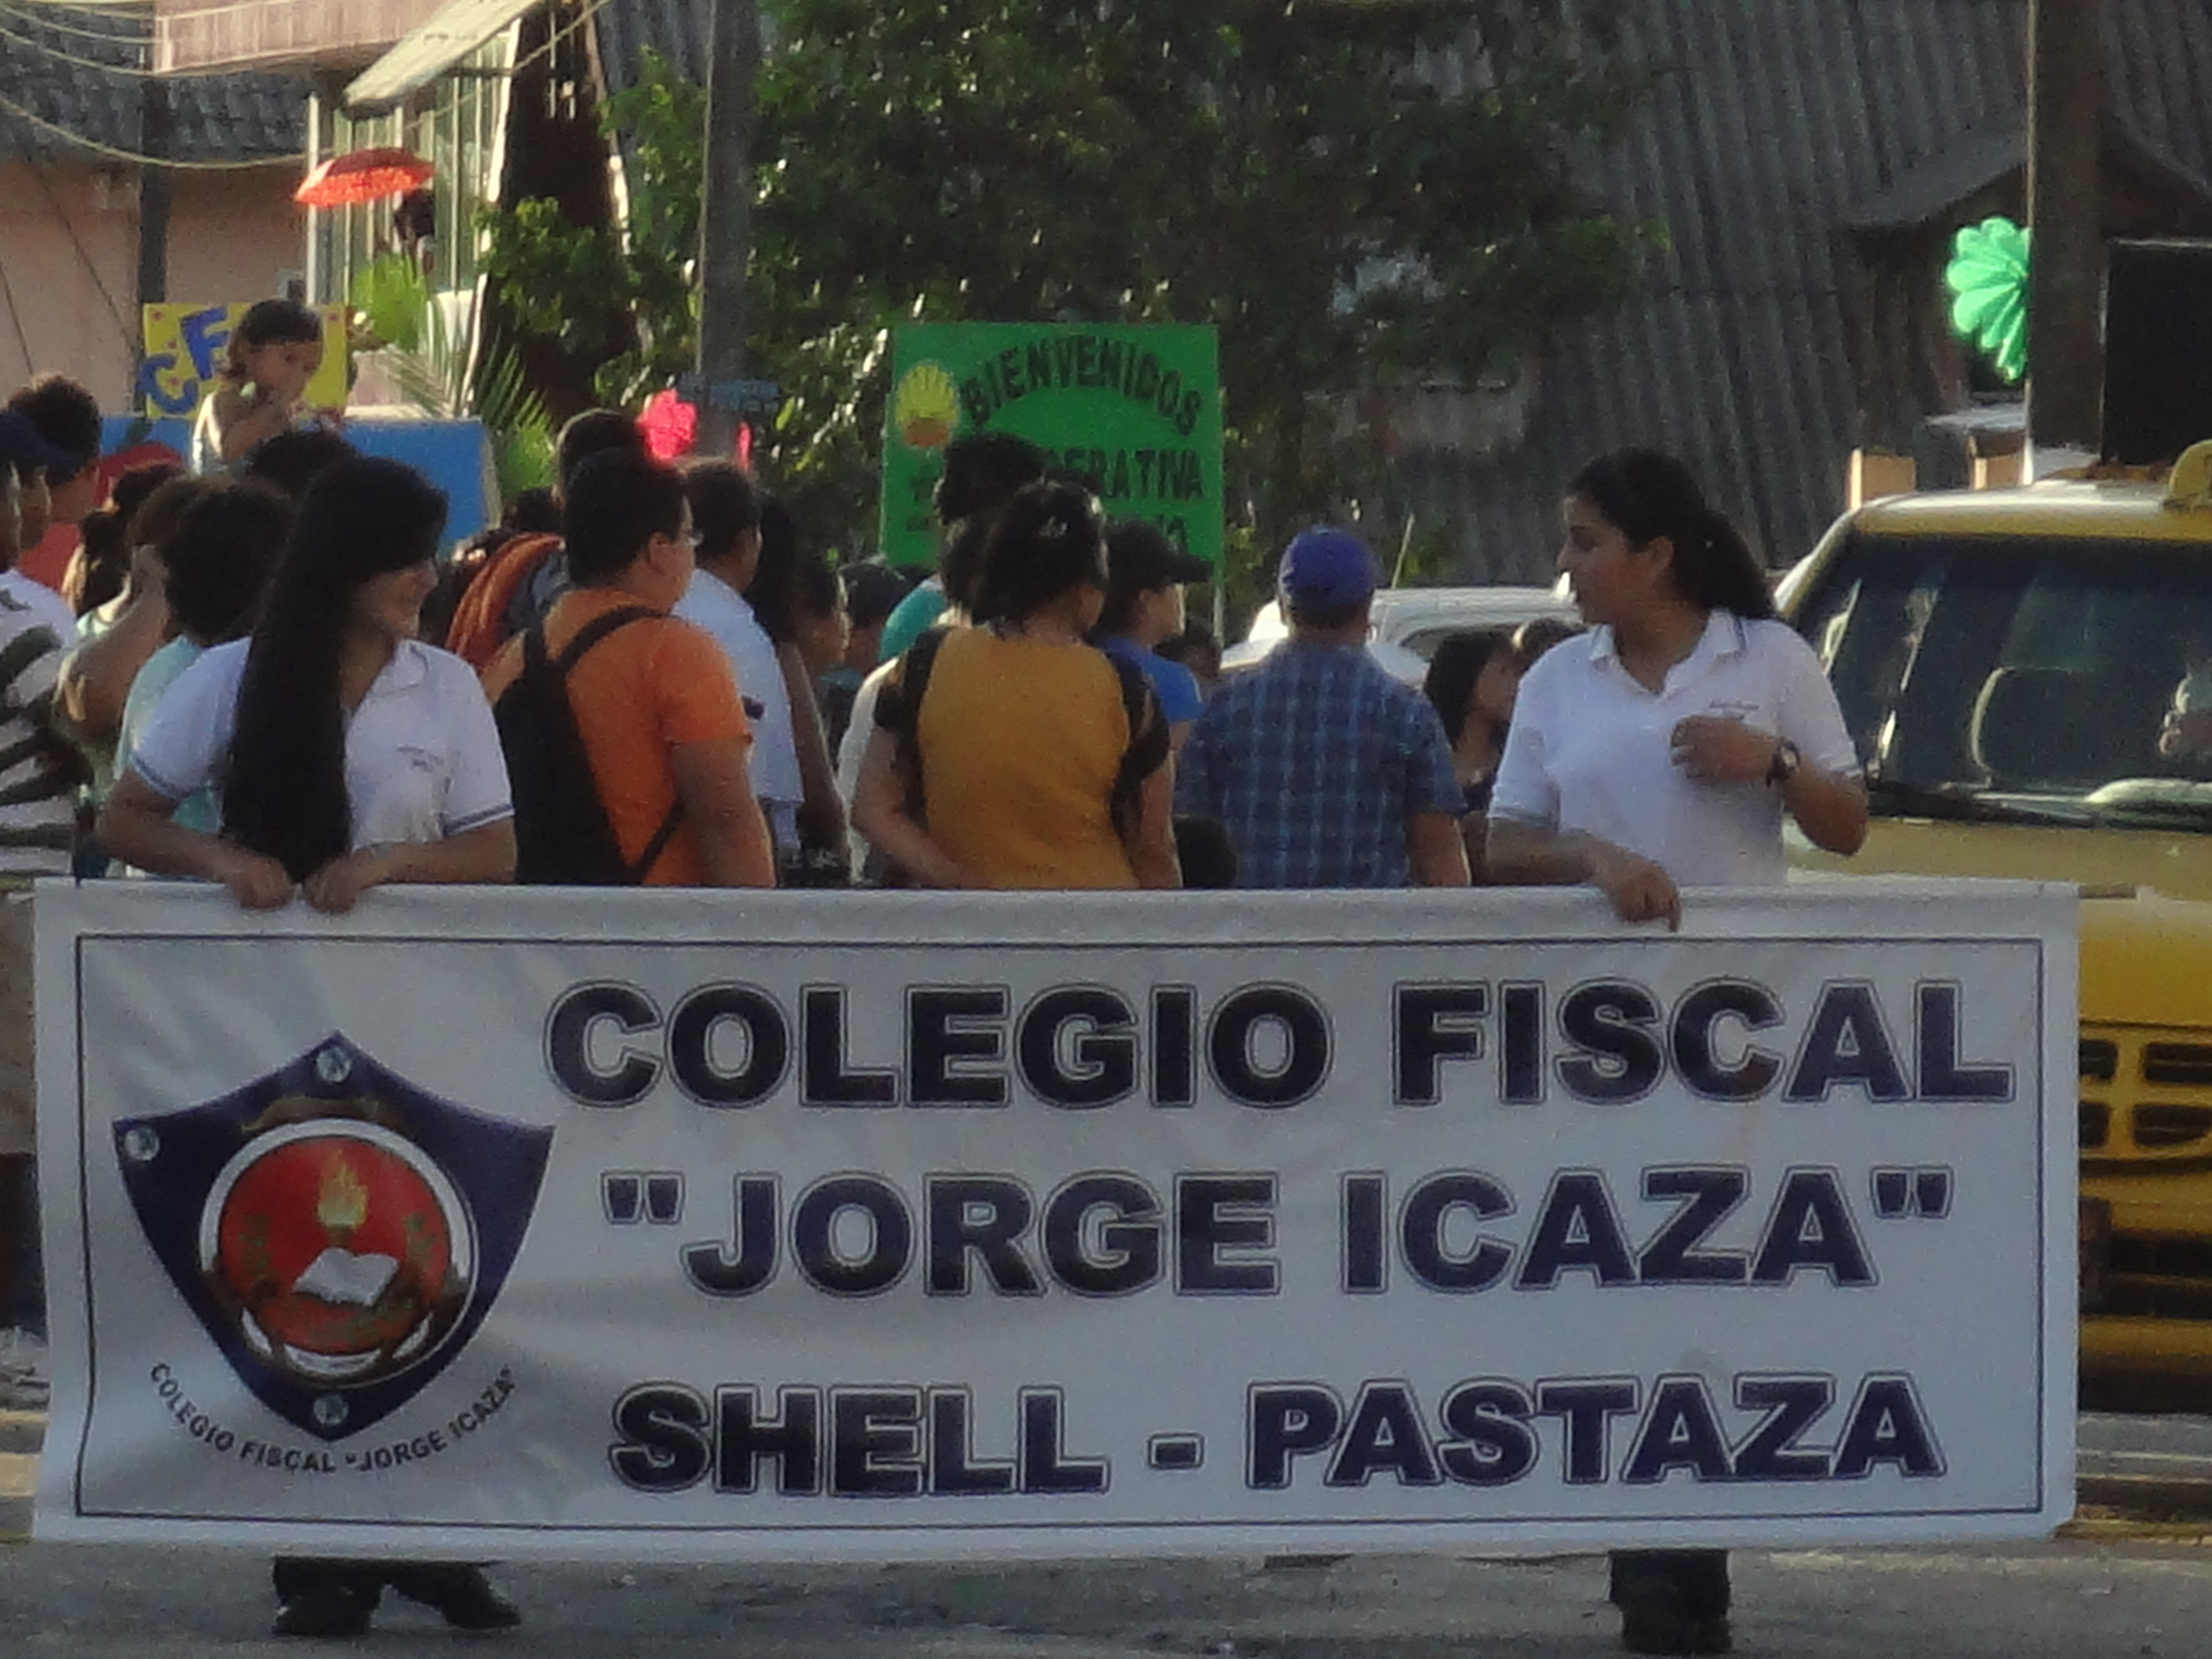 Foto: Colegio Jorge Icaza - Shell (Pastaza), Ecuador